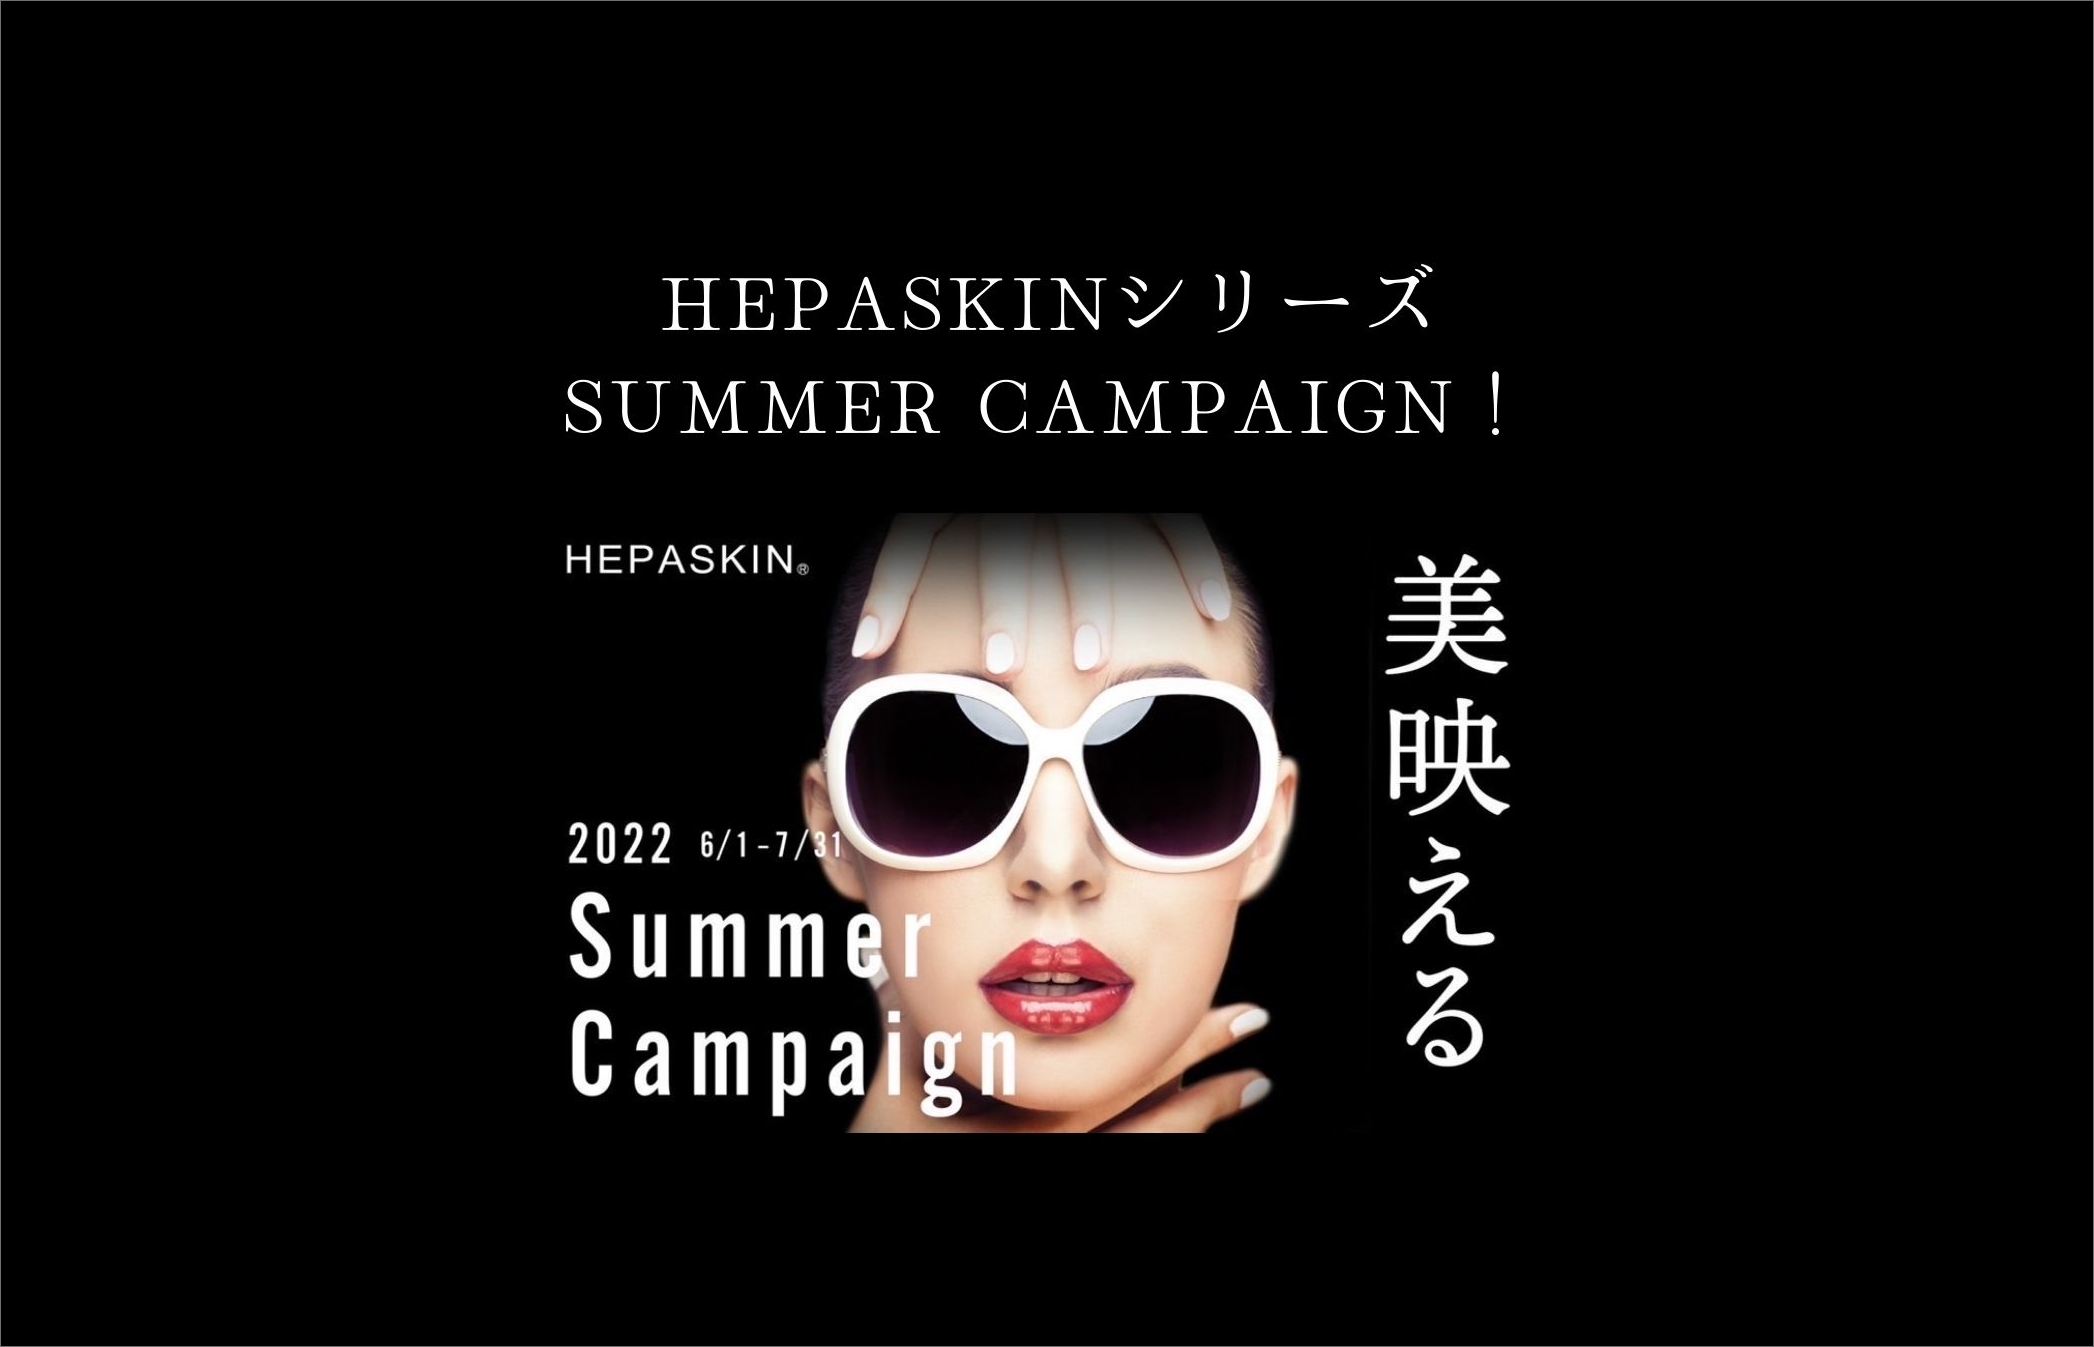 HEPASKINシリーズ SUMMER CAMPAINGN!